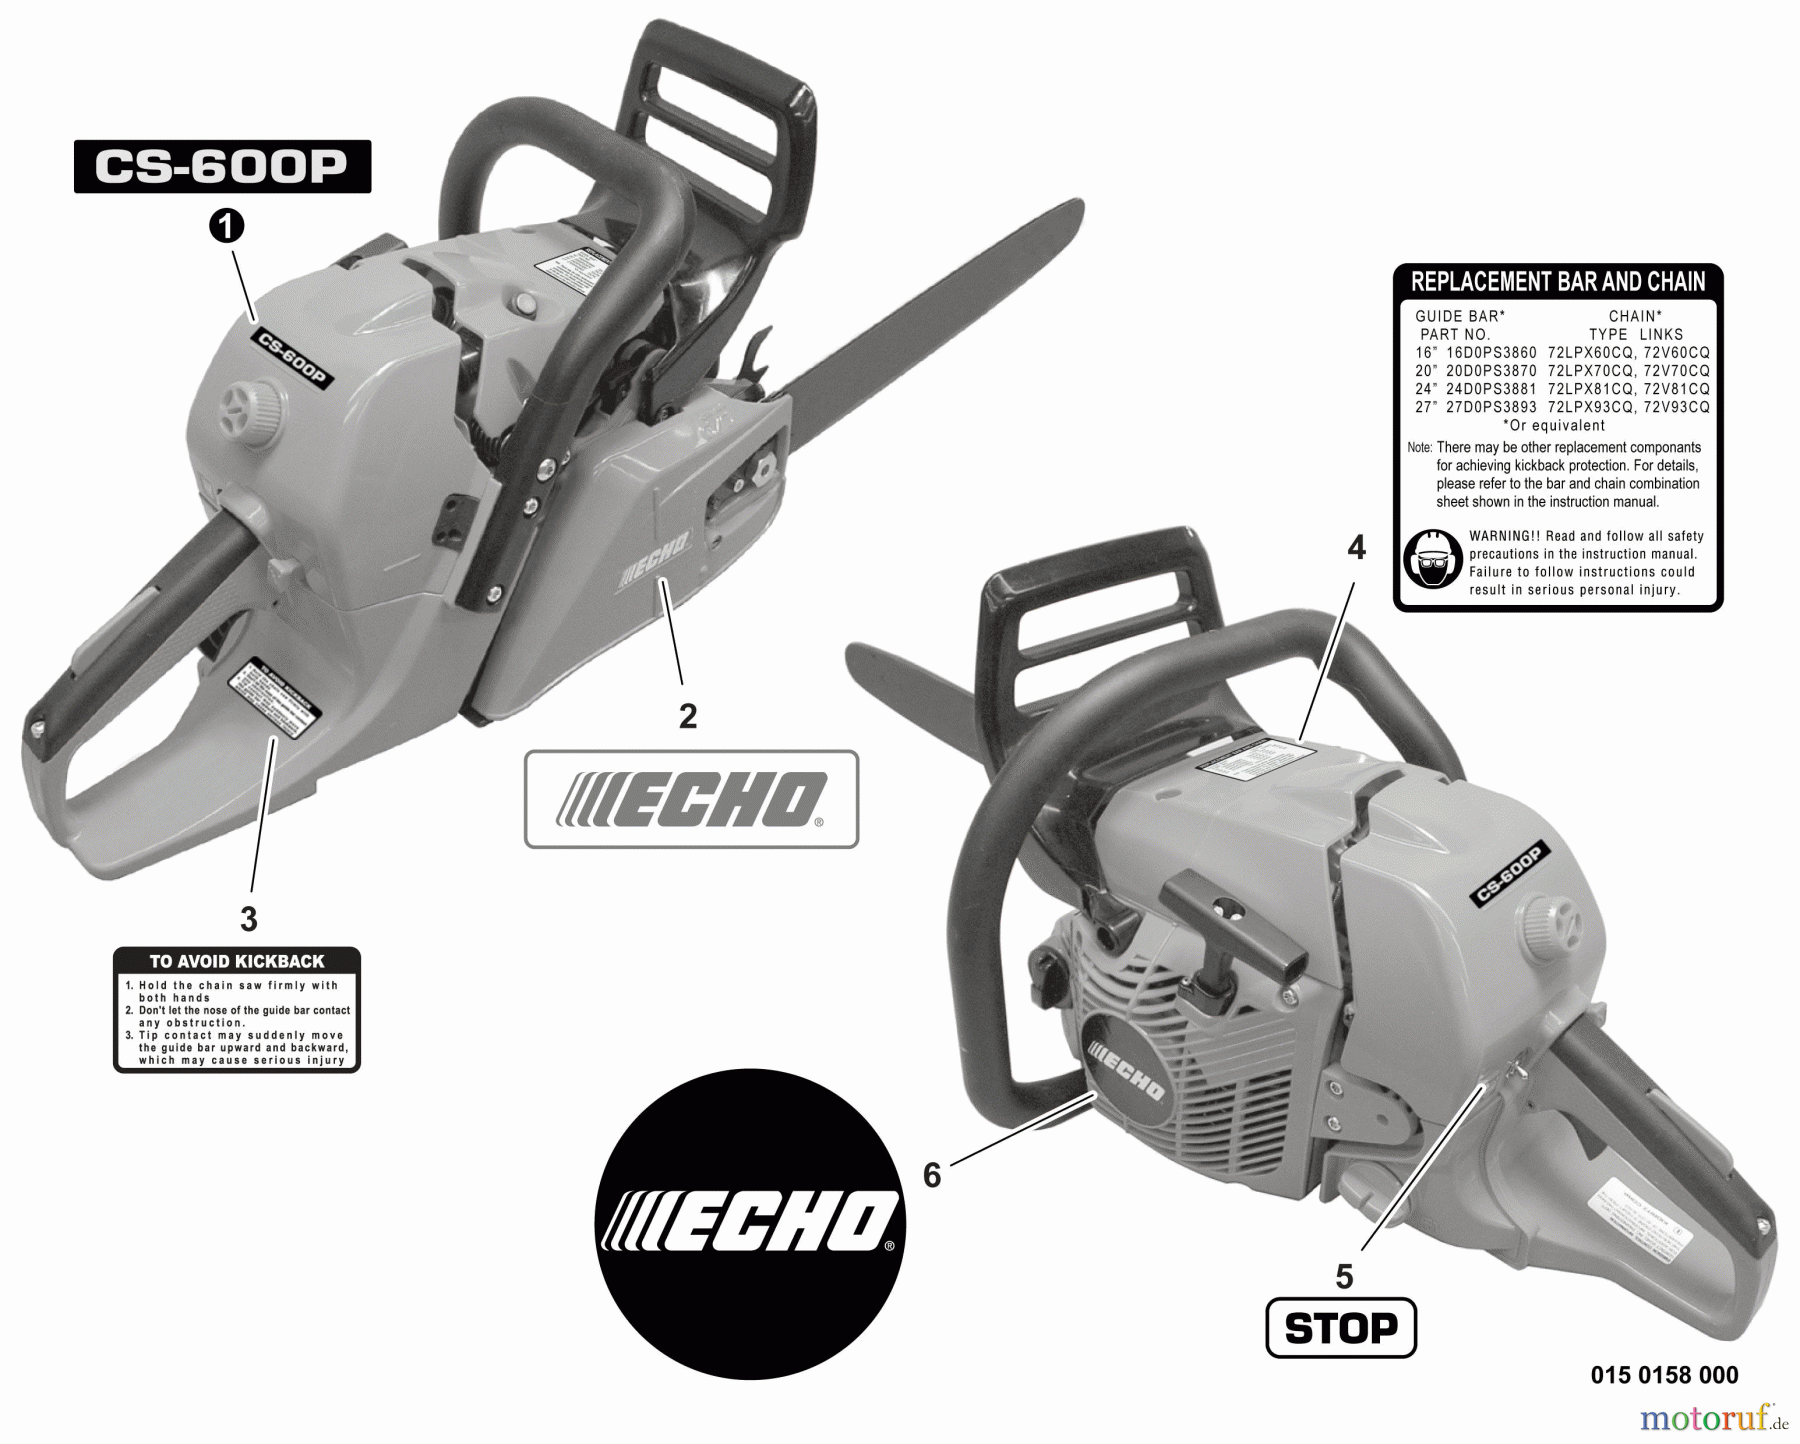  Echo Sägen, Kettensägen CS-600P - Echo Chainsaw, S/N: C22312001001 - C22312999999 Labels